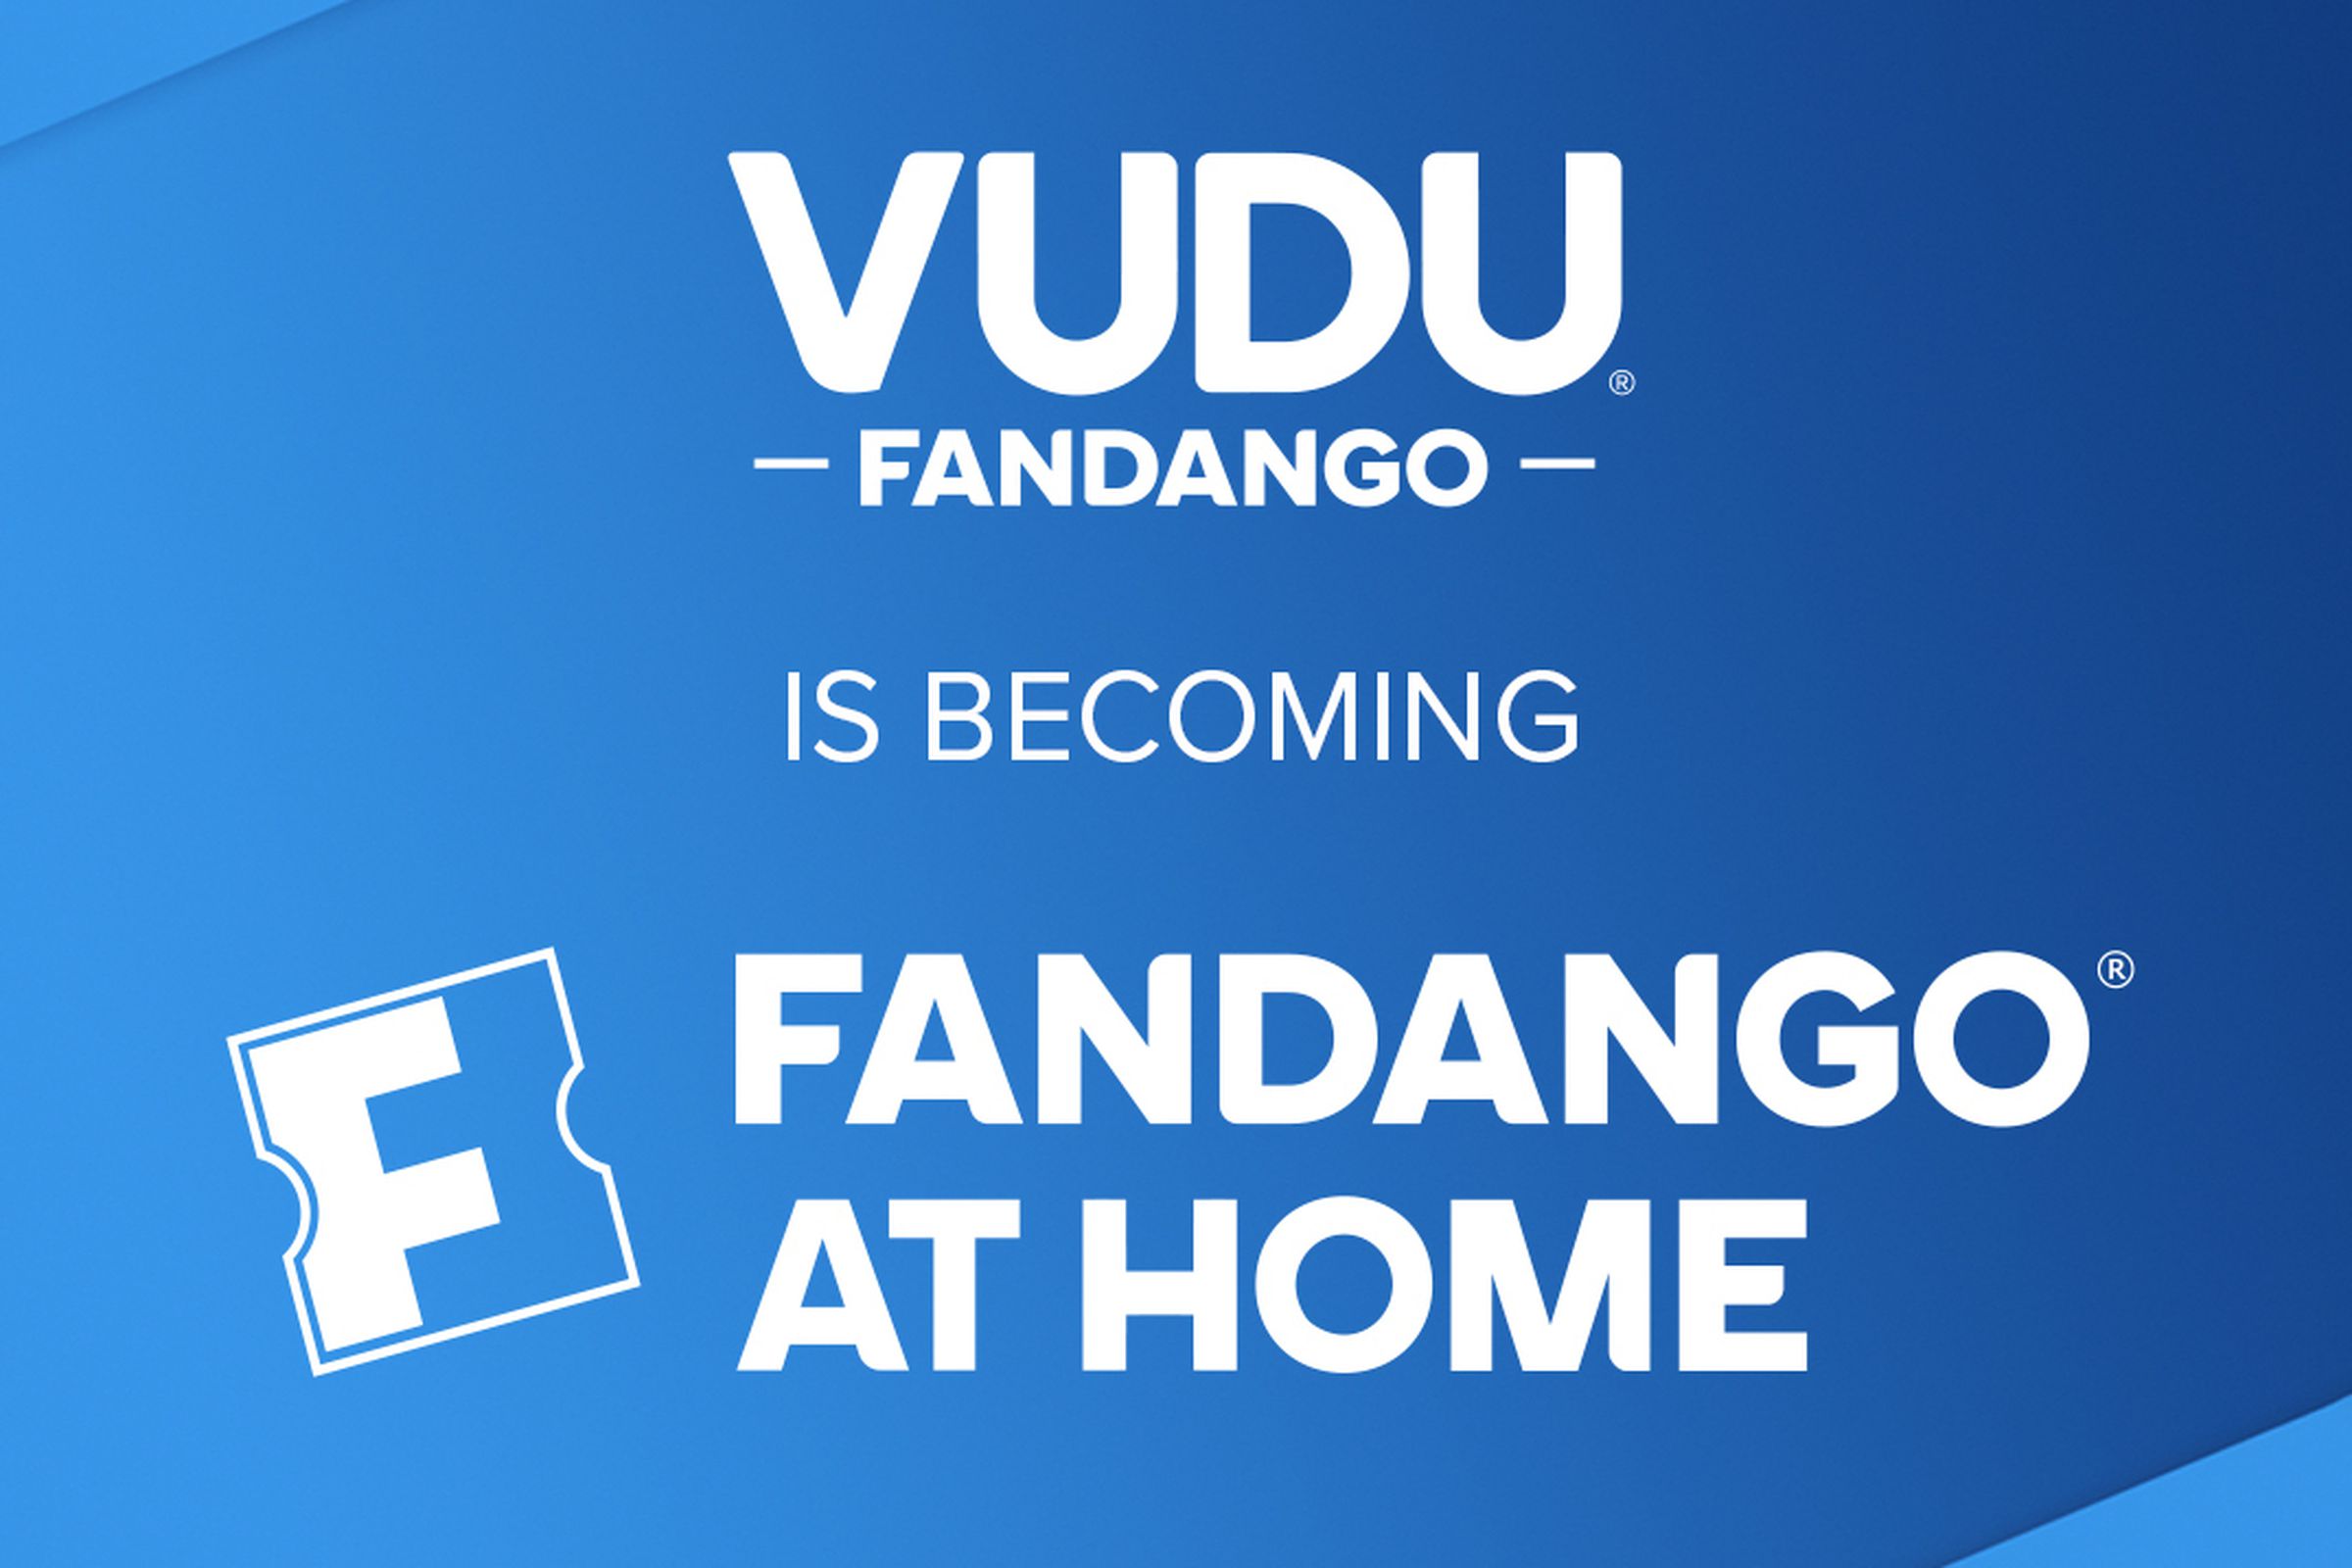 An image announcing Vudu’s rebranding to Fandango at Home.